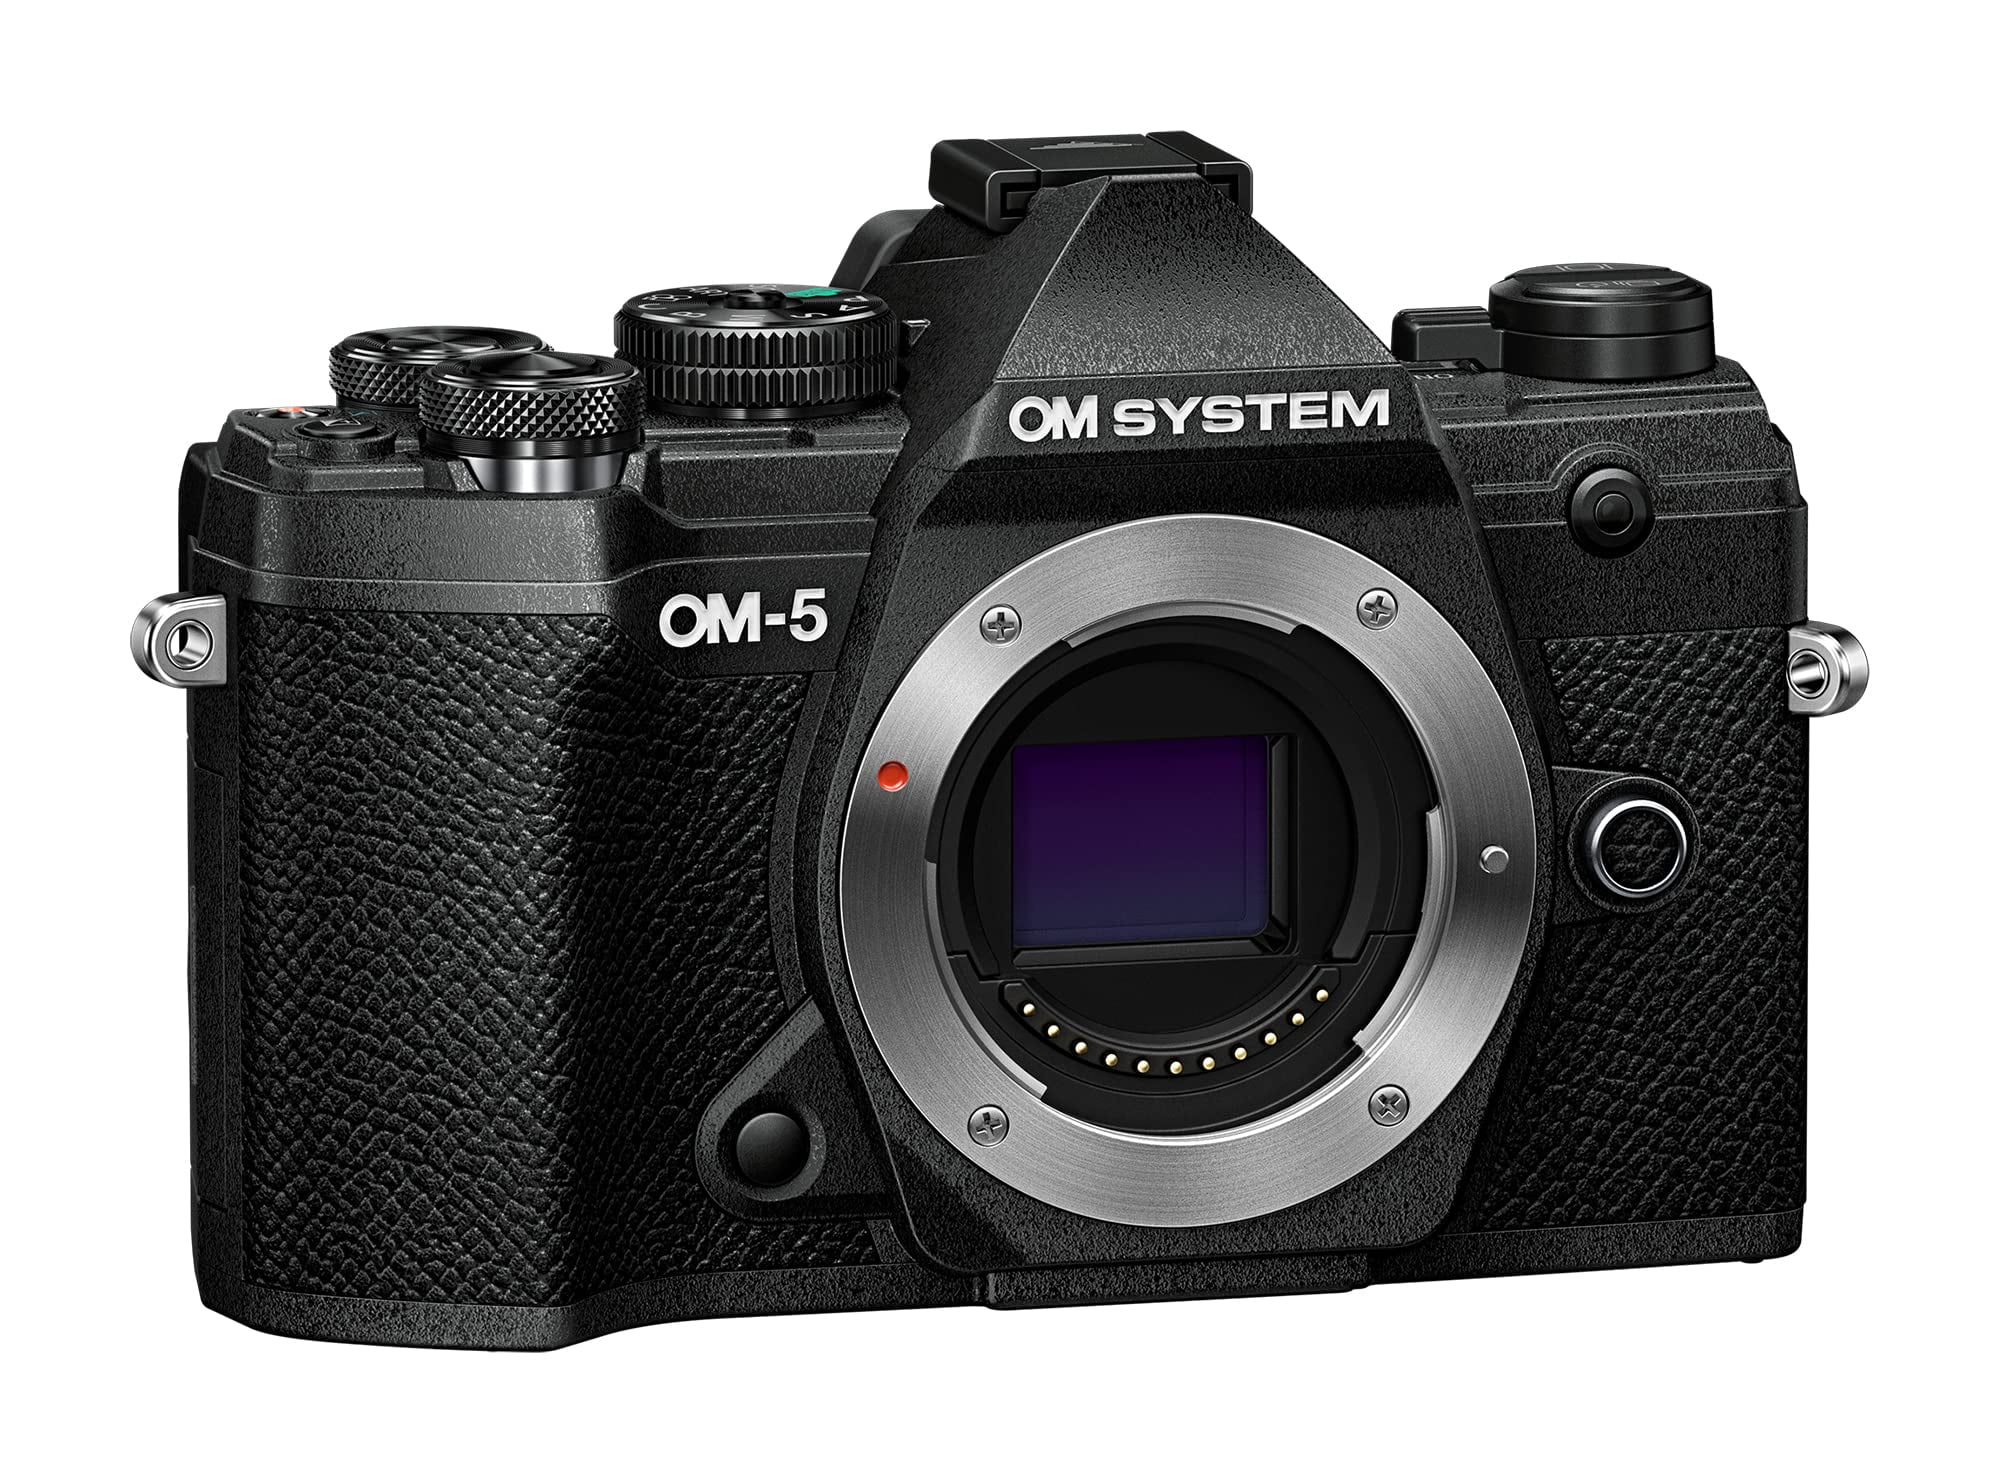 Picture of OM Digital Solutions V210020BU000 OM-5 Body Mirrorless Camera, Black